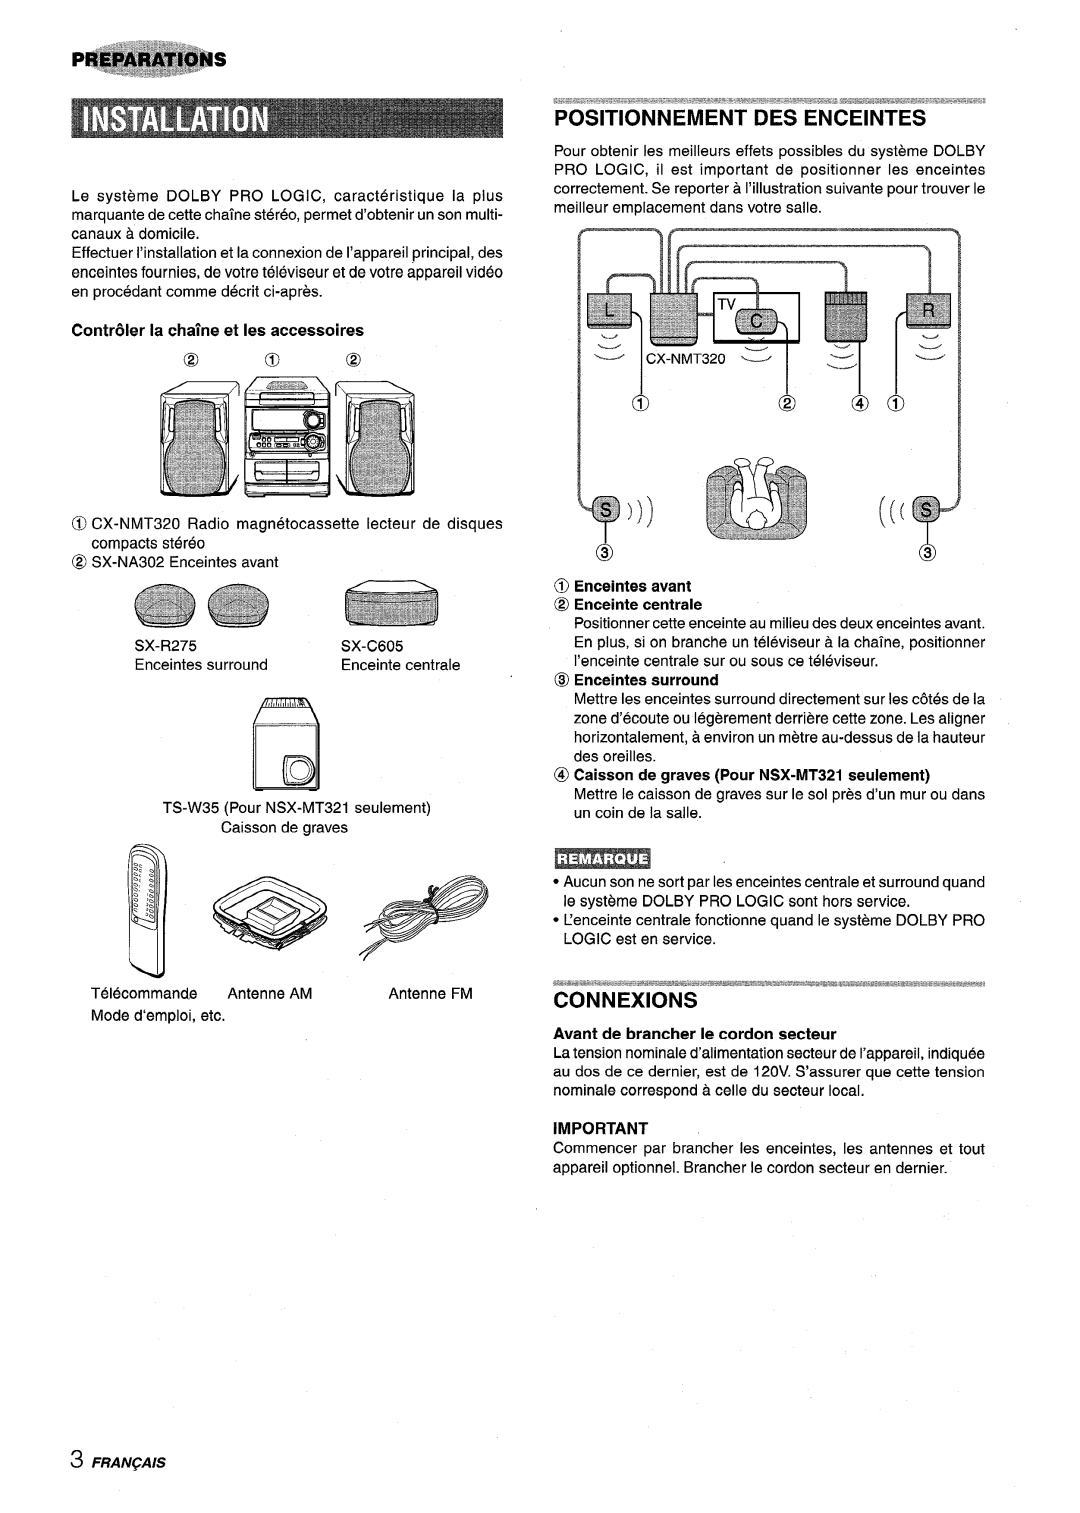 Sony NSX-MT320 manual Positionnement Des Enceintes, Connexions, @ Enceintes avant, Contr61er la chafne et Ies accessoires 